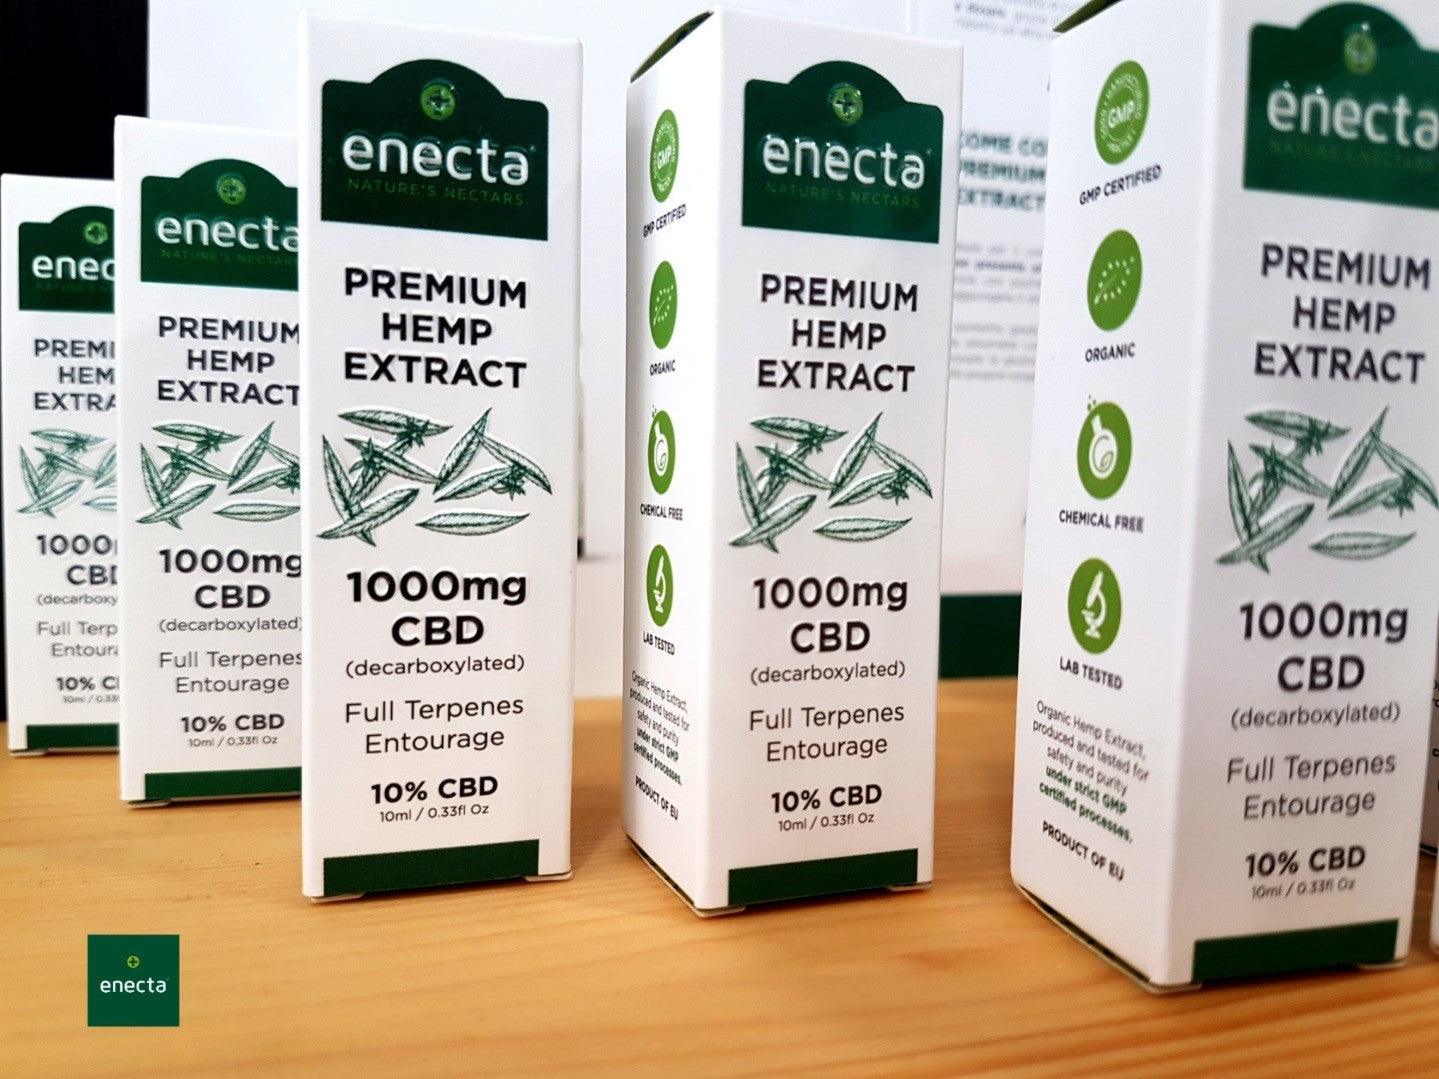 Enecta CBD Oil: Use and correct dosage - Enecta.en